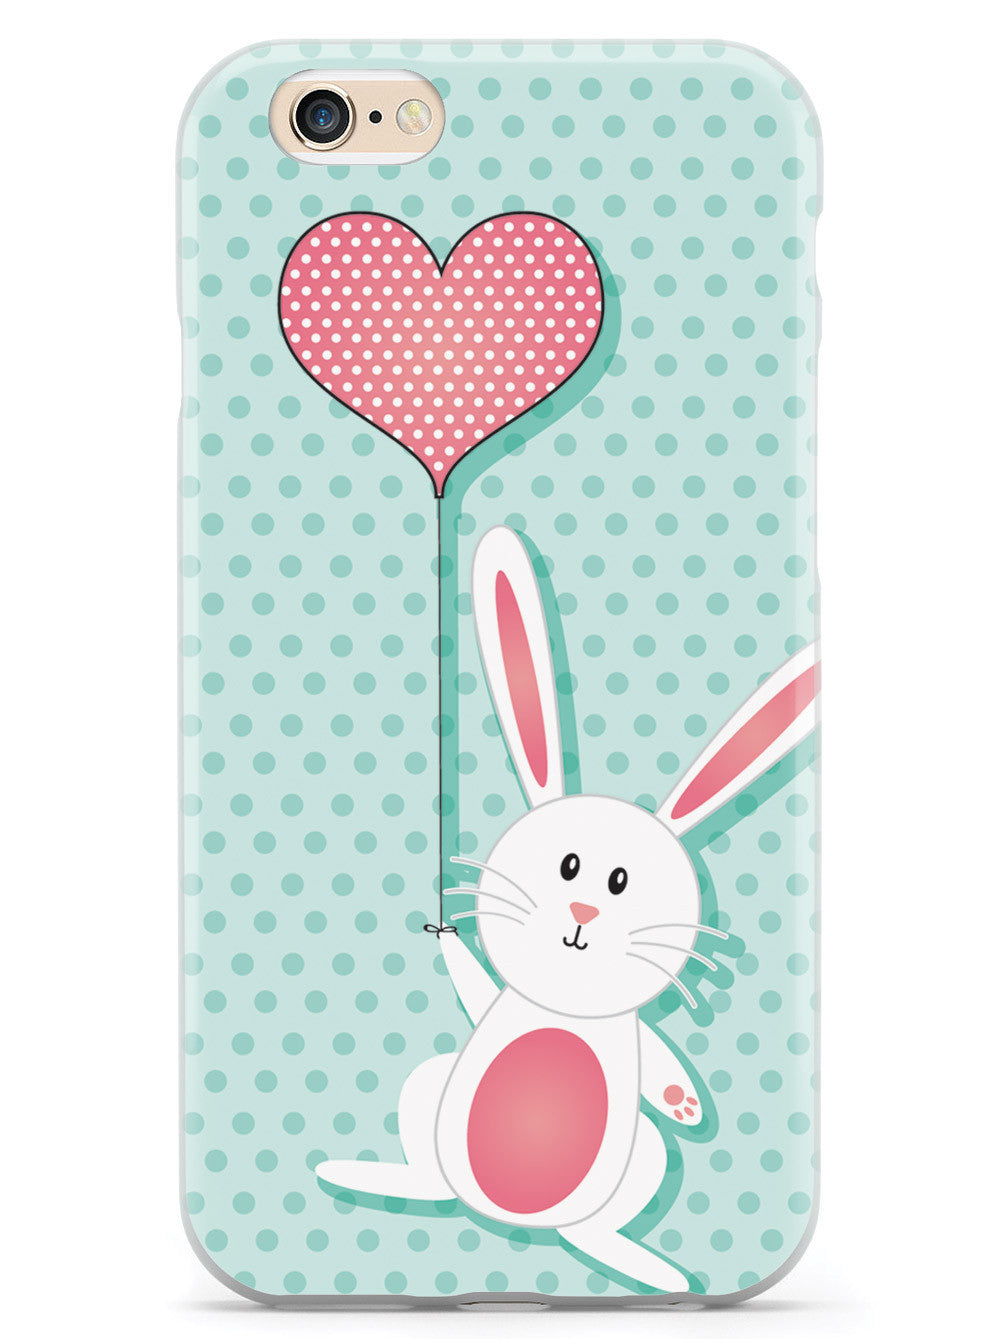 Adorable Bunny with Heart Balloon Case